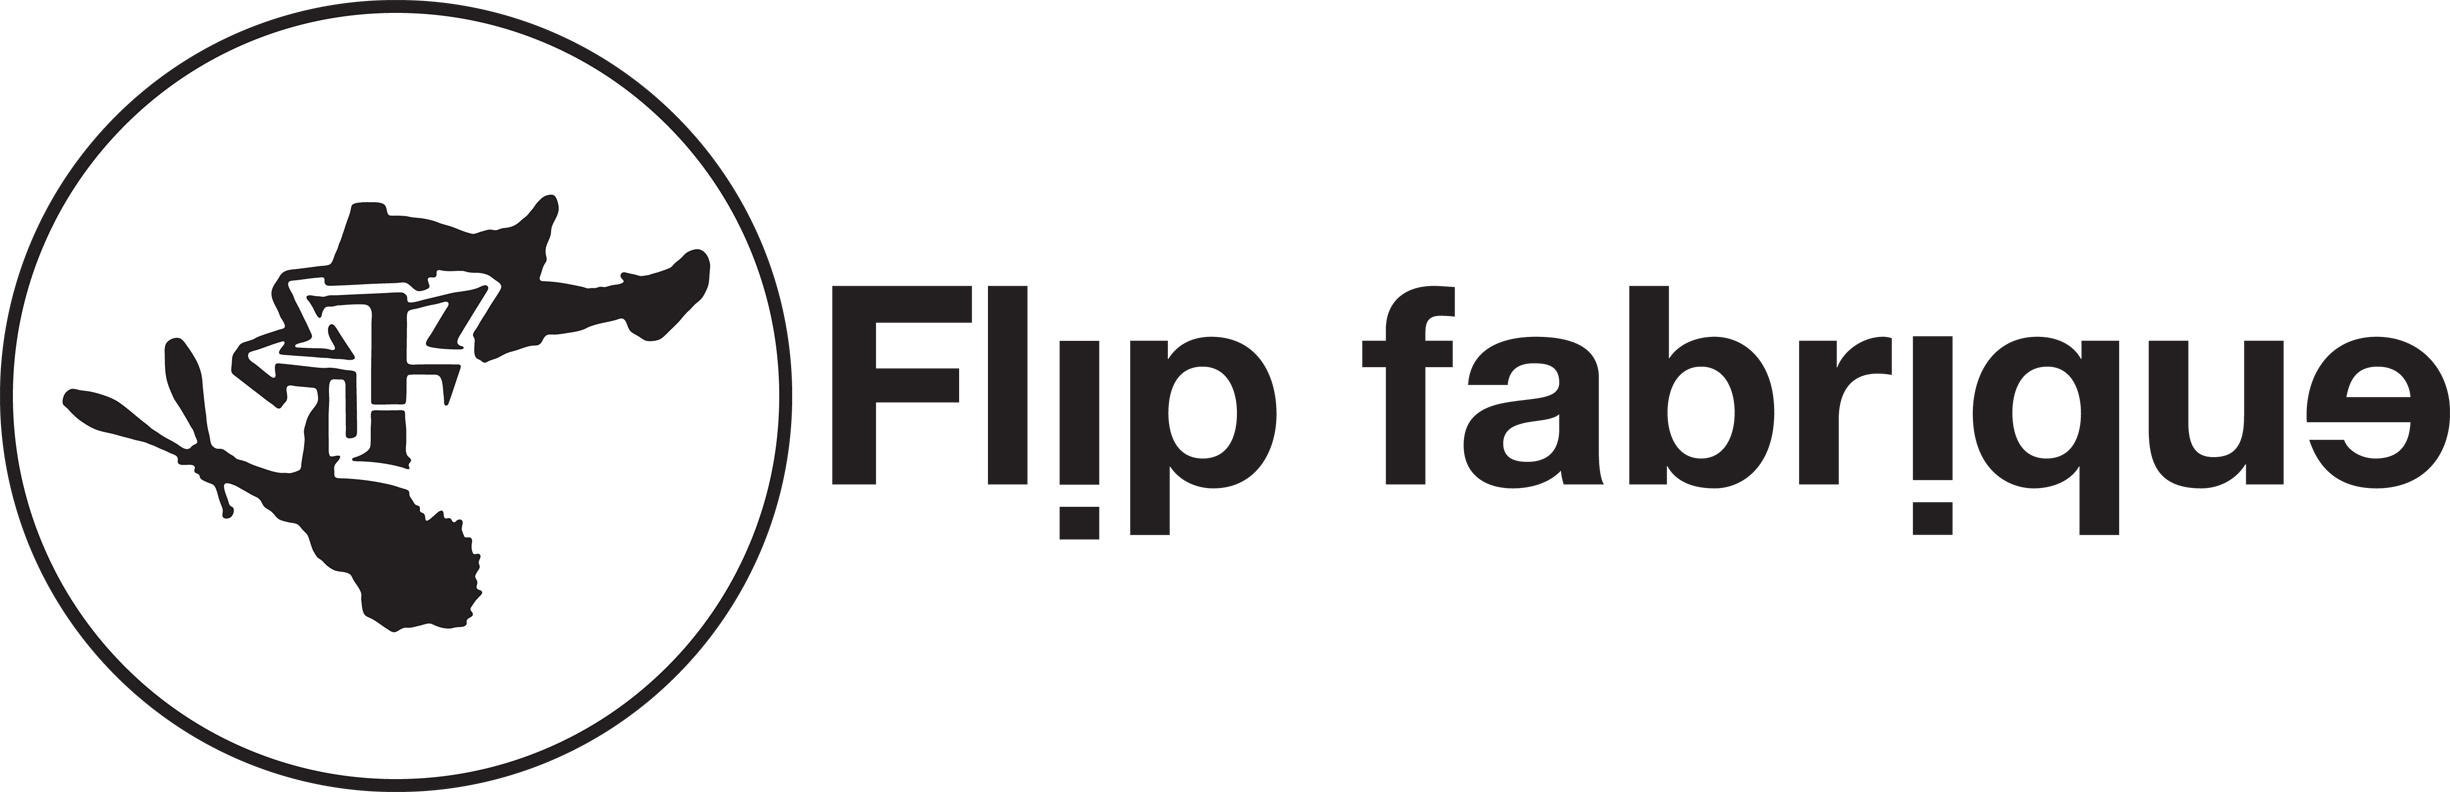 Flip FabriQue